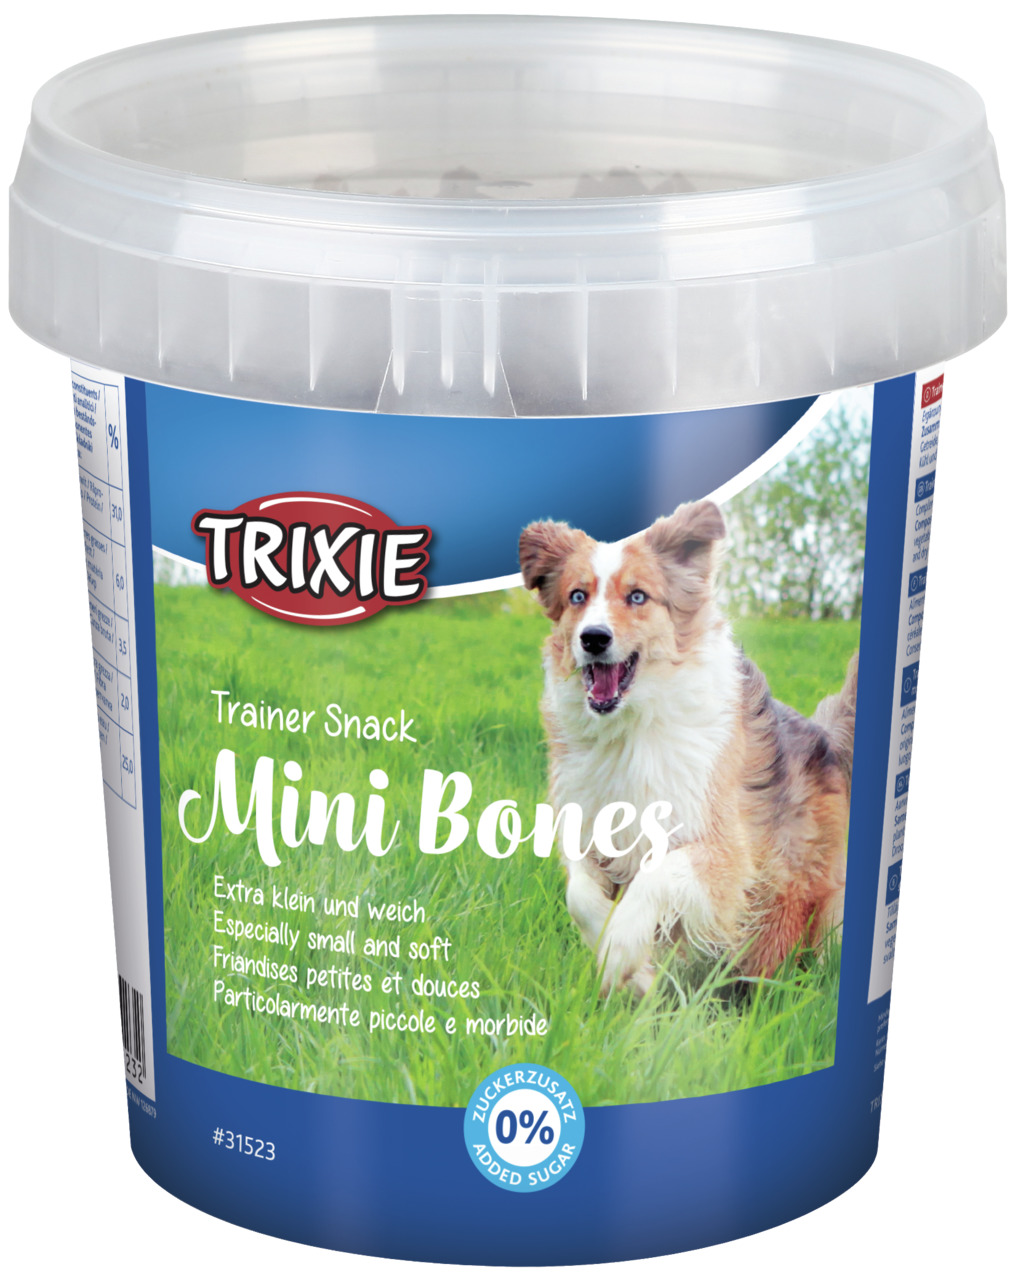 Trixie Trainer Snack Mini Bones mit Rind, Lamm und Geflügel Hunde Snack 500 g